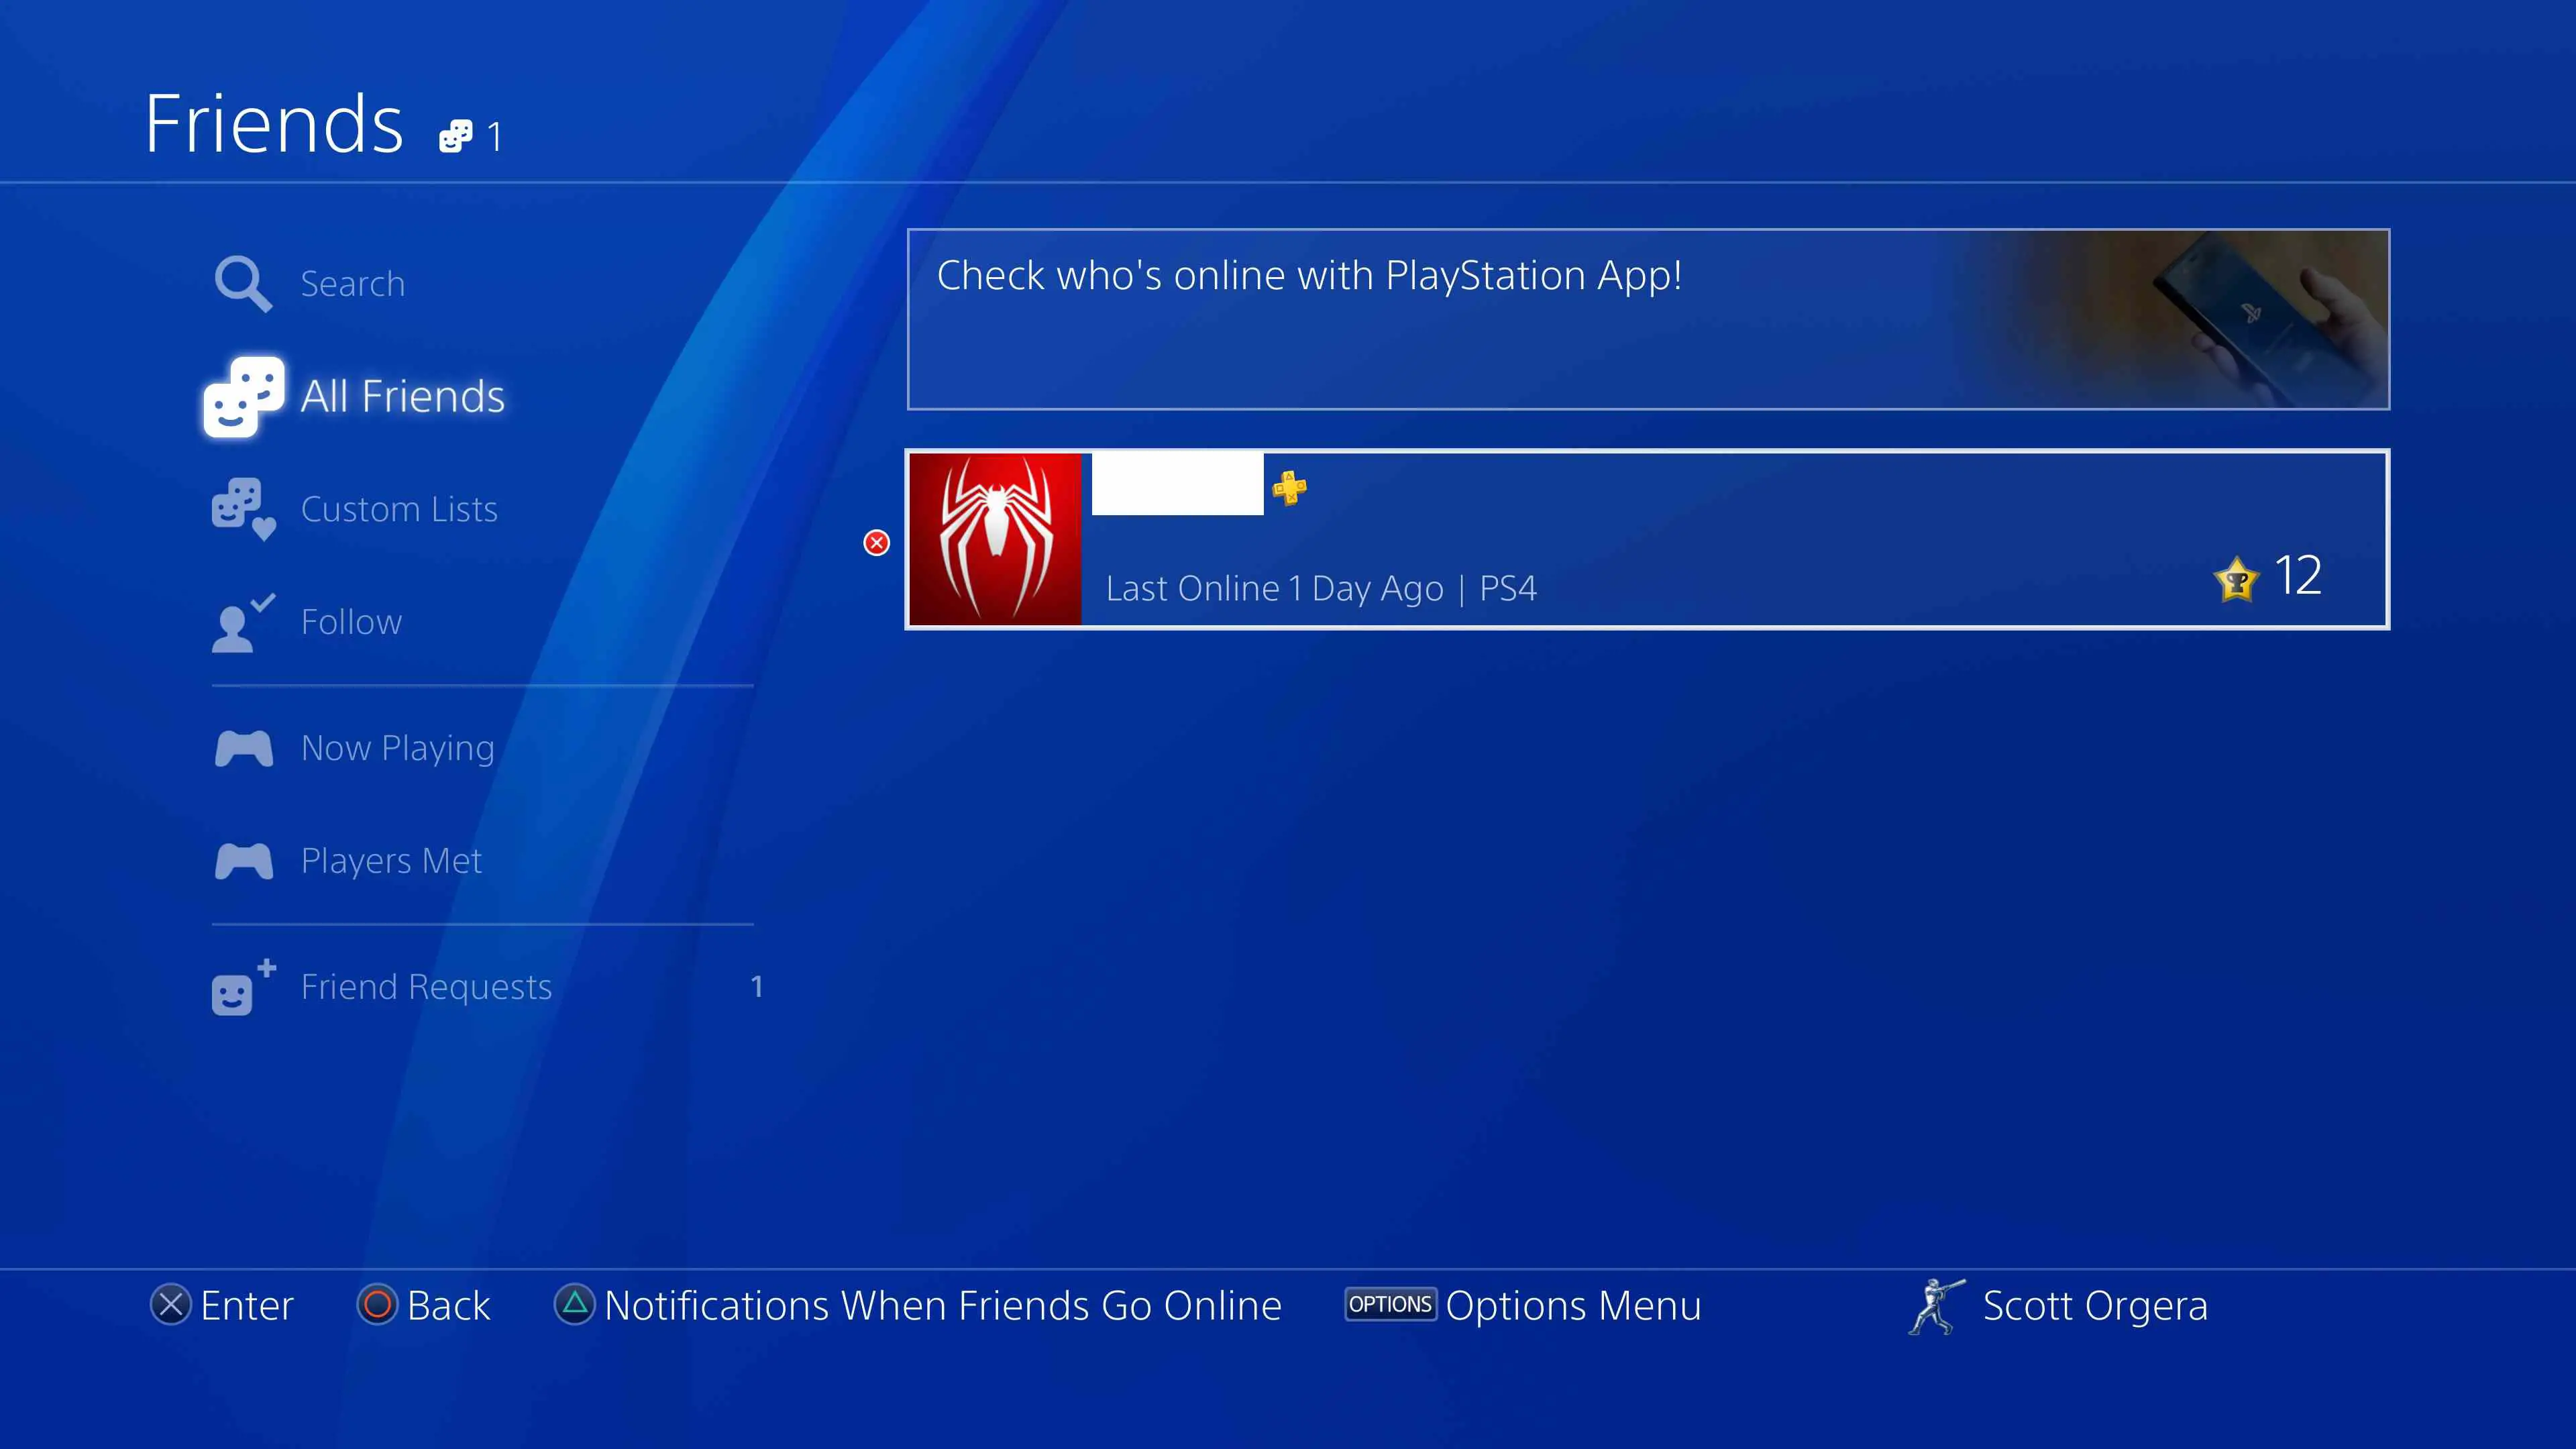 captura de tela da interface de todos os amigos do PS4